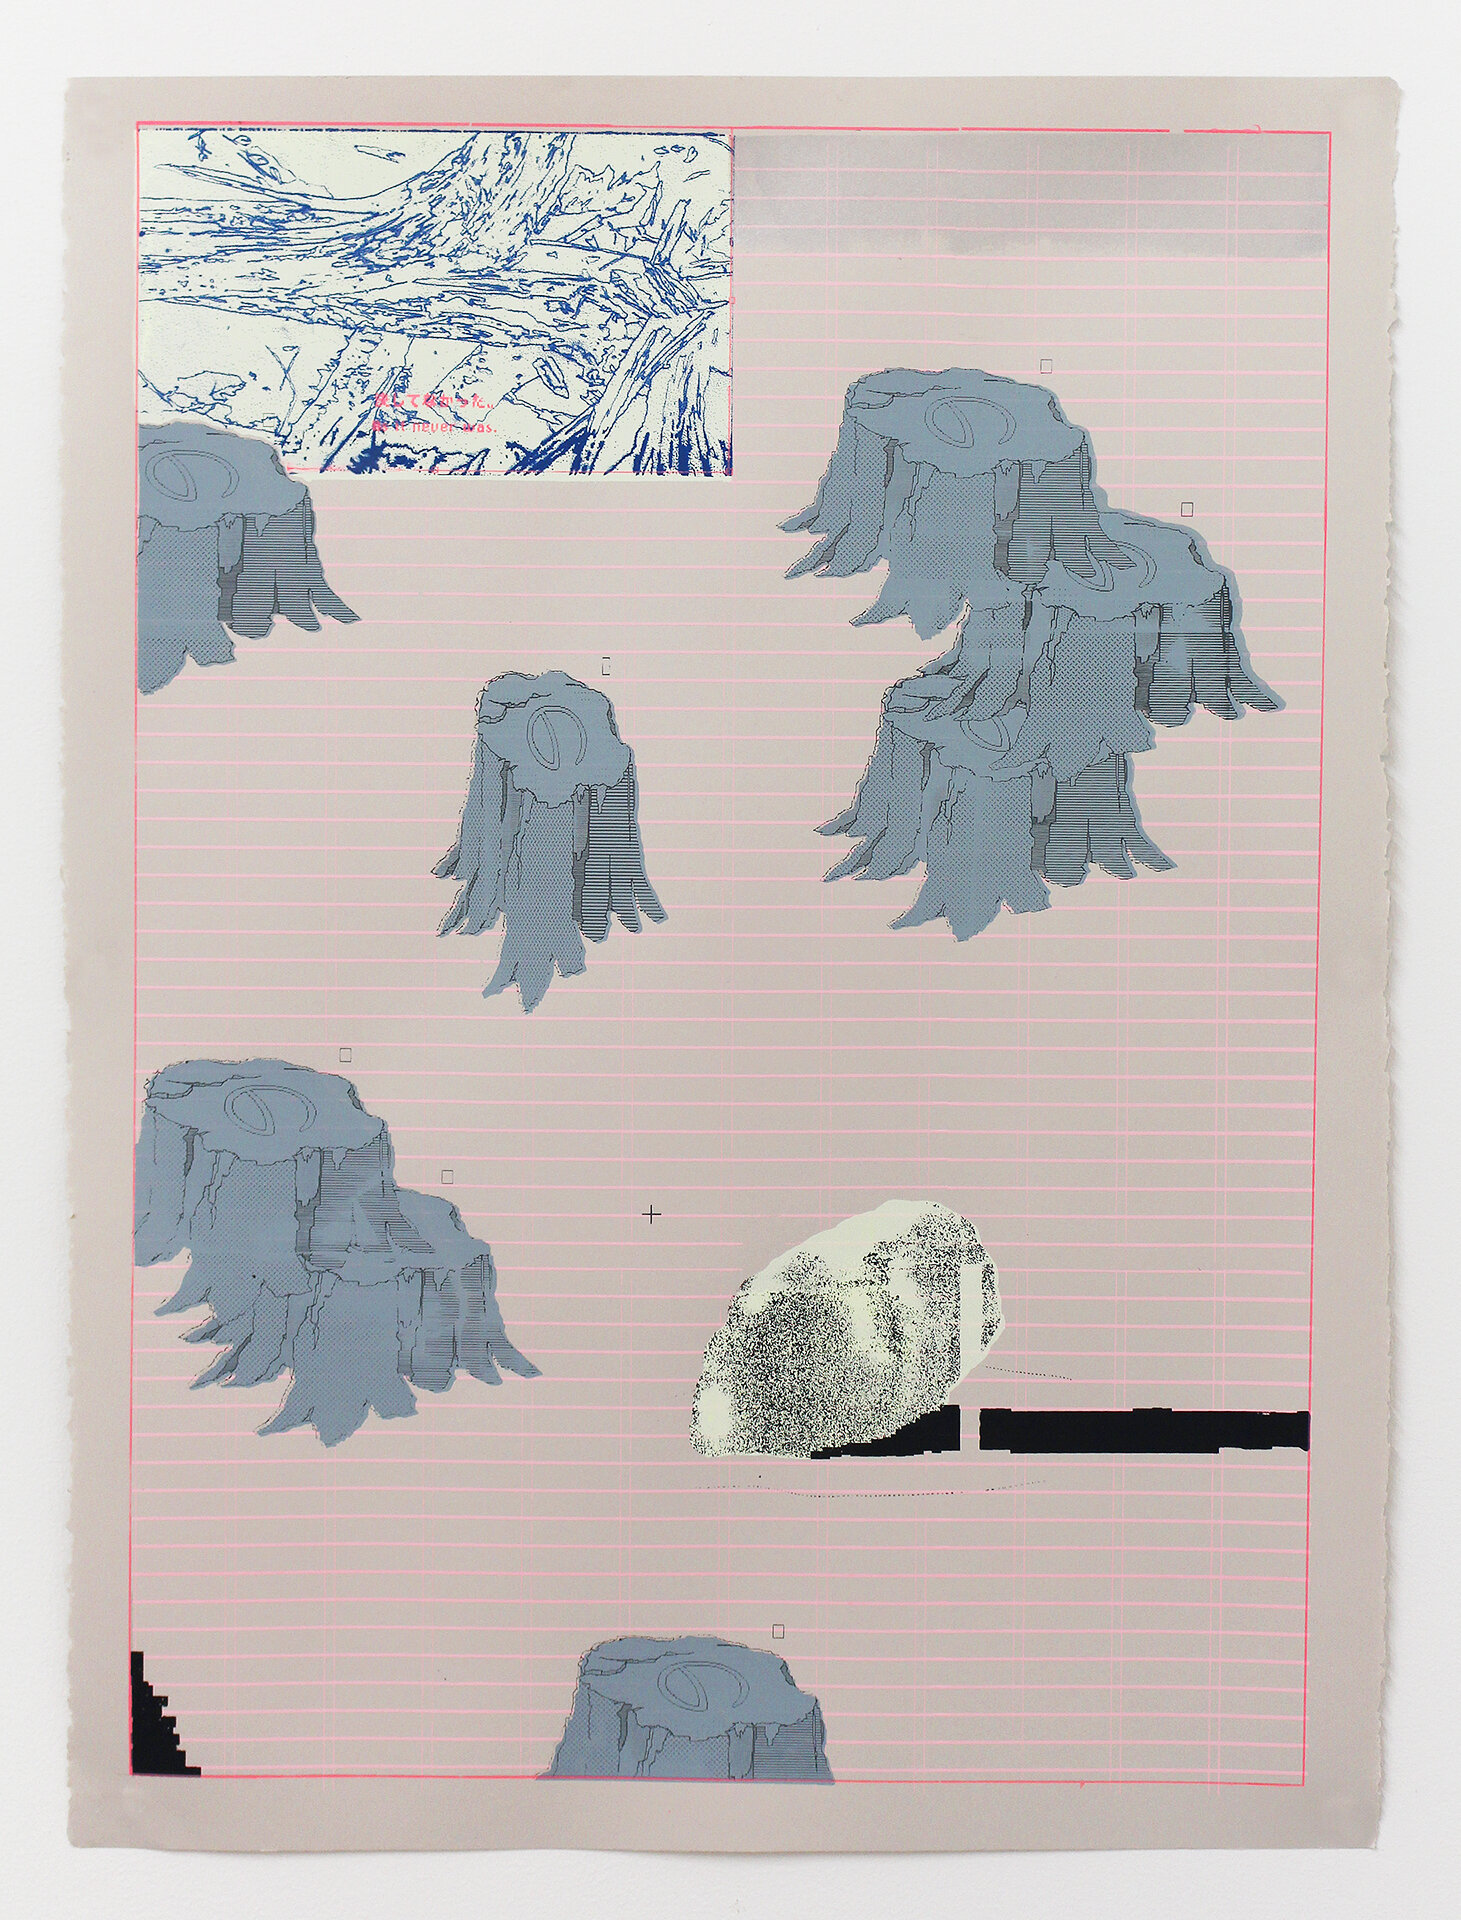   Nonononononono  silkscreen print on Stonehenge 22 x 30 in.  2019 Edition of 3 